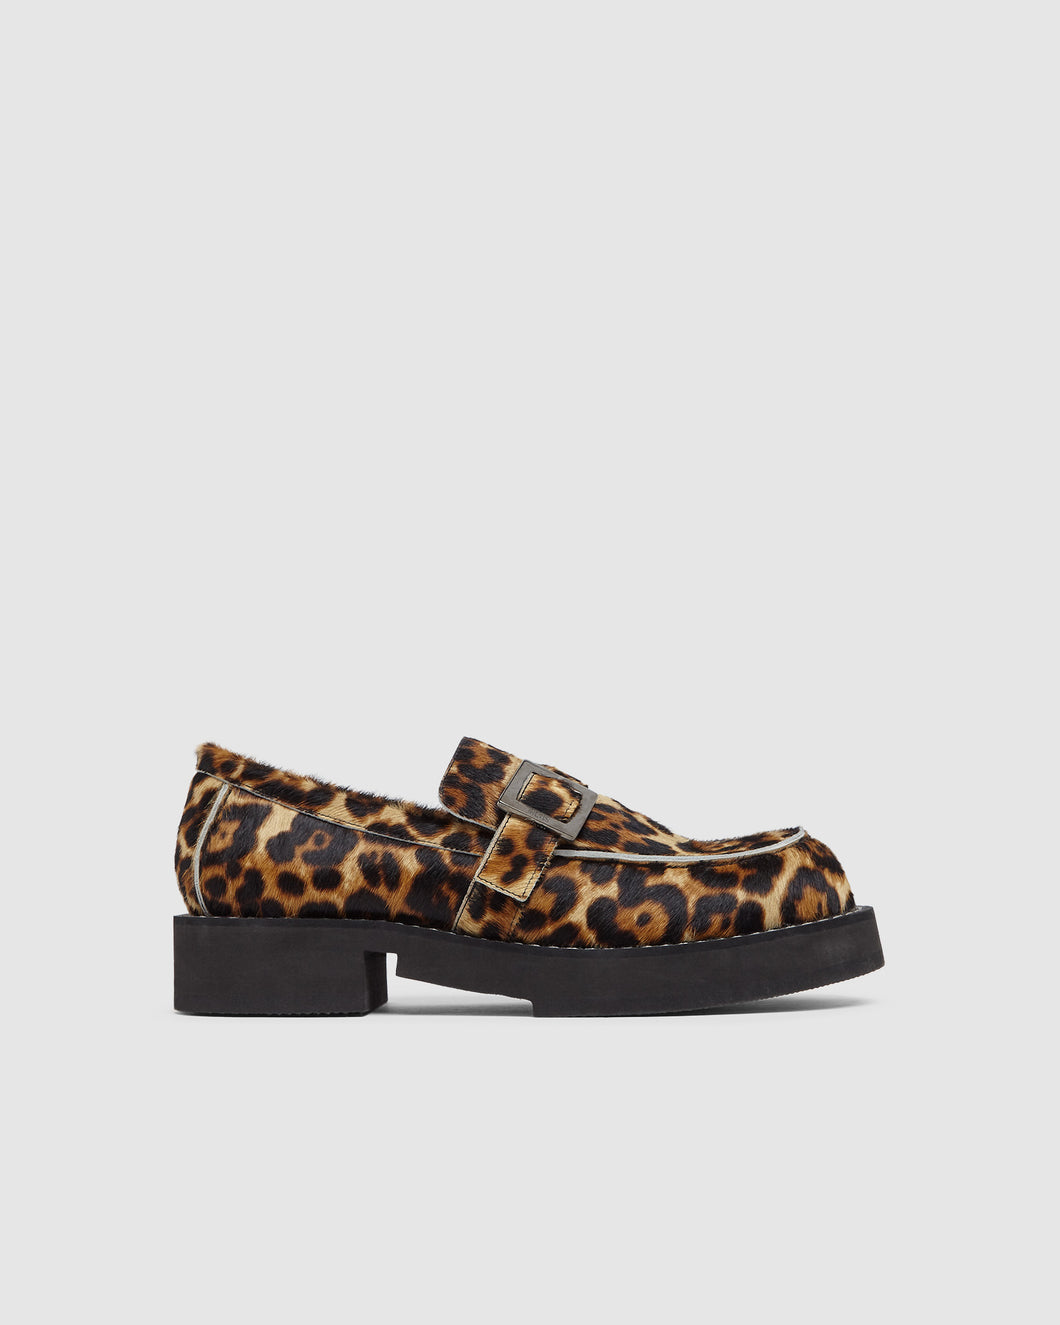 GCDS x Clarks Leopard loafers: Unisex Loafers Leopard | GCDS